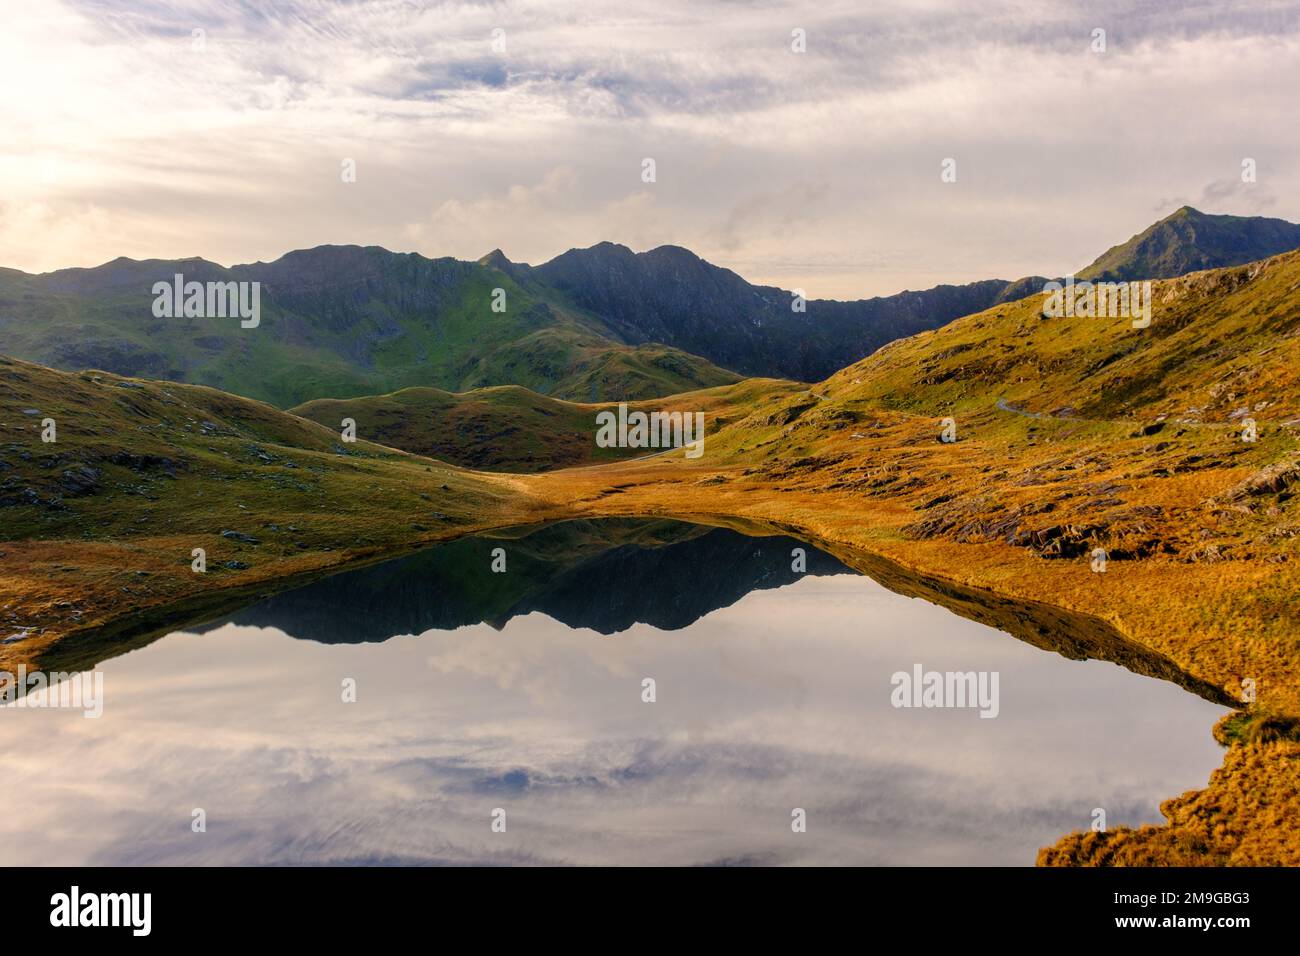 Le sommet de Snowdon se reflète dans un lac du parc national de Snowdonia, au nord du pays de Galles Banque D'Images